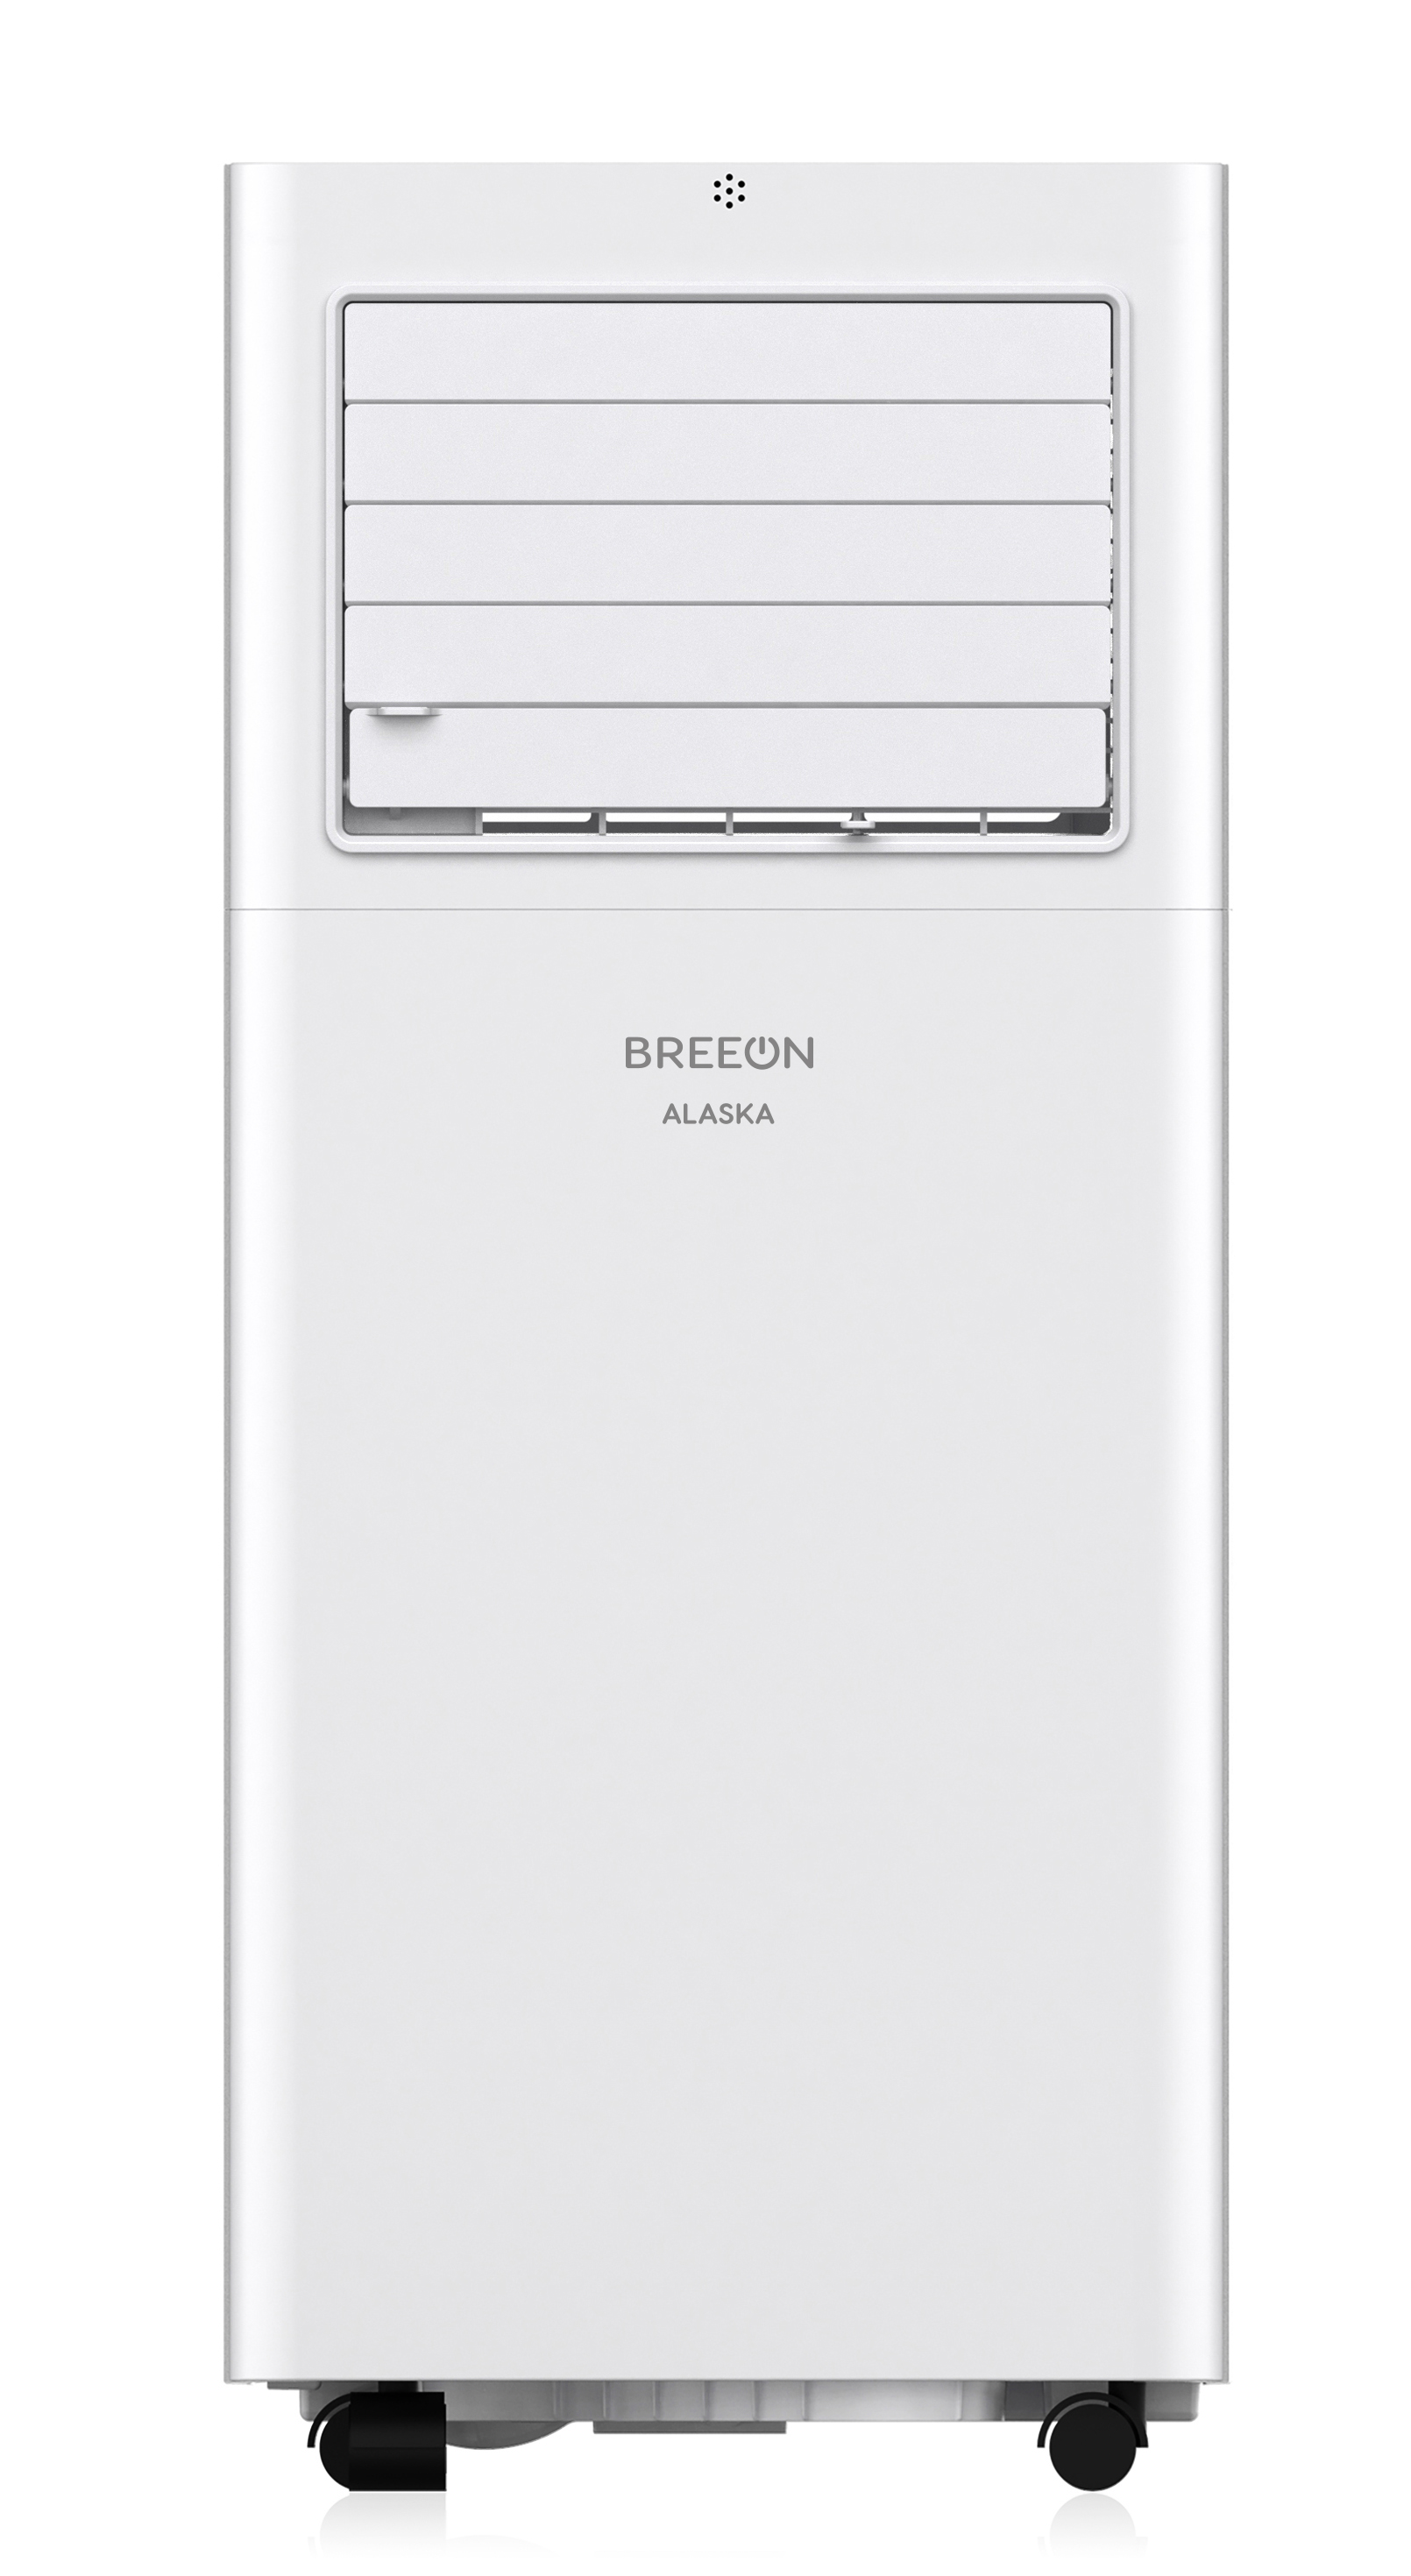 Мобильный кондиционер Breeon BPC - 09TDR, до 27 м², мощность при охлаждении: 2.05 кВт